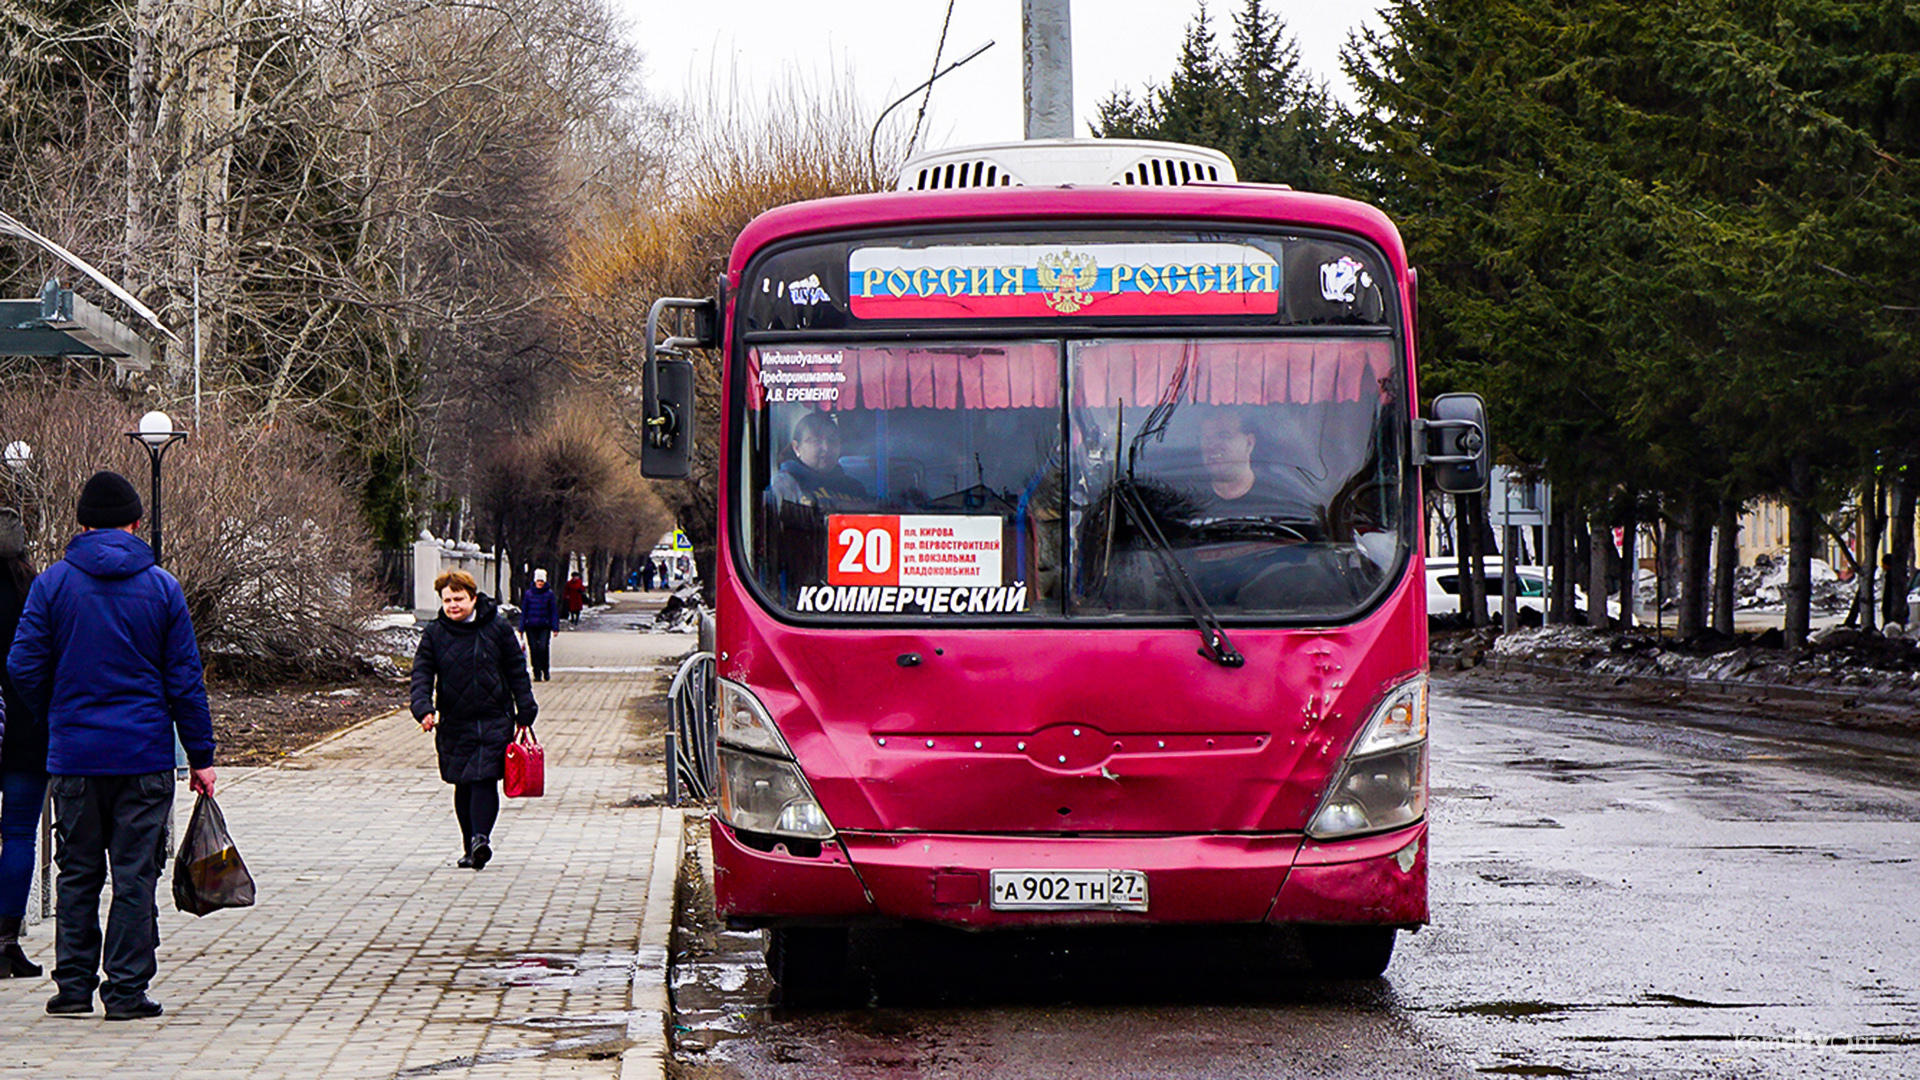 На время праздничного шествия в Комсомольске-на-Амуре будут изменены автобусные маршруты